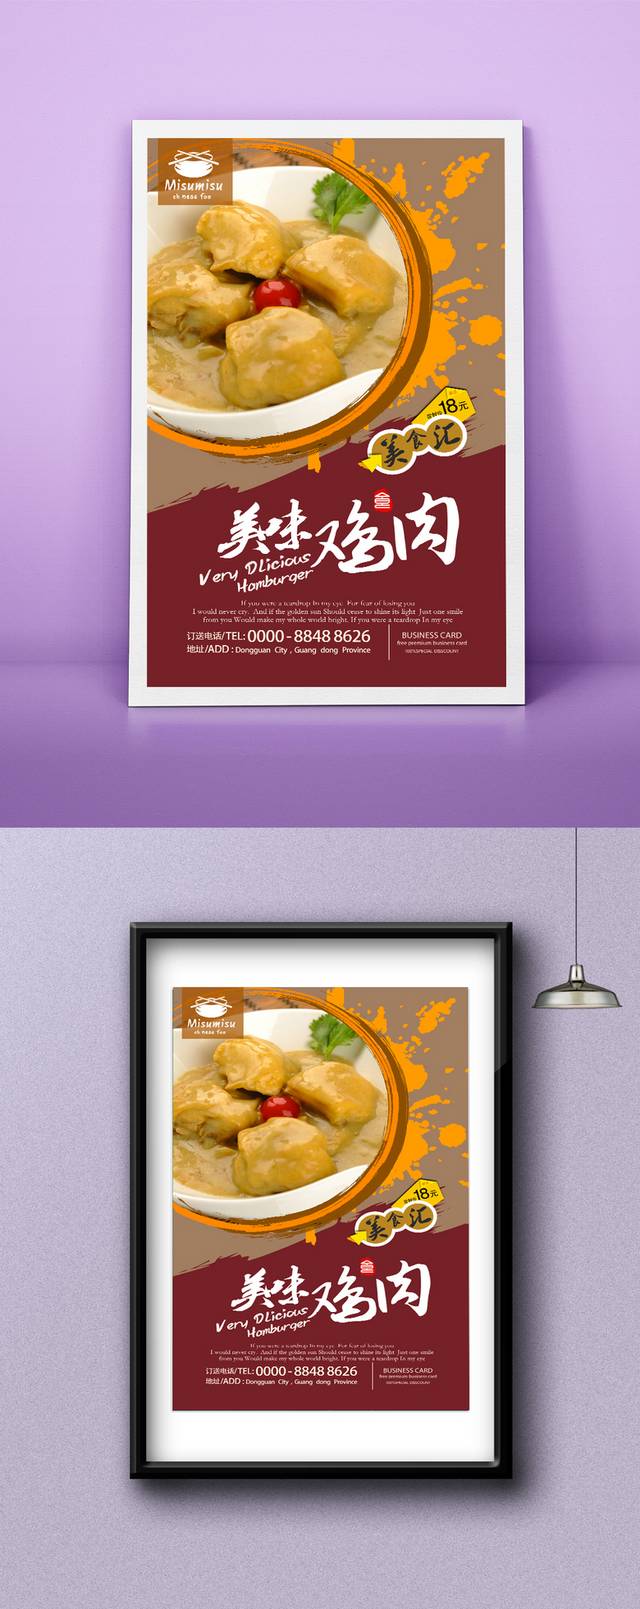 经典咖喱鸡宣传海报设计psd